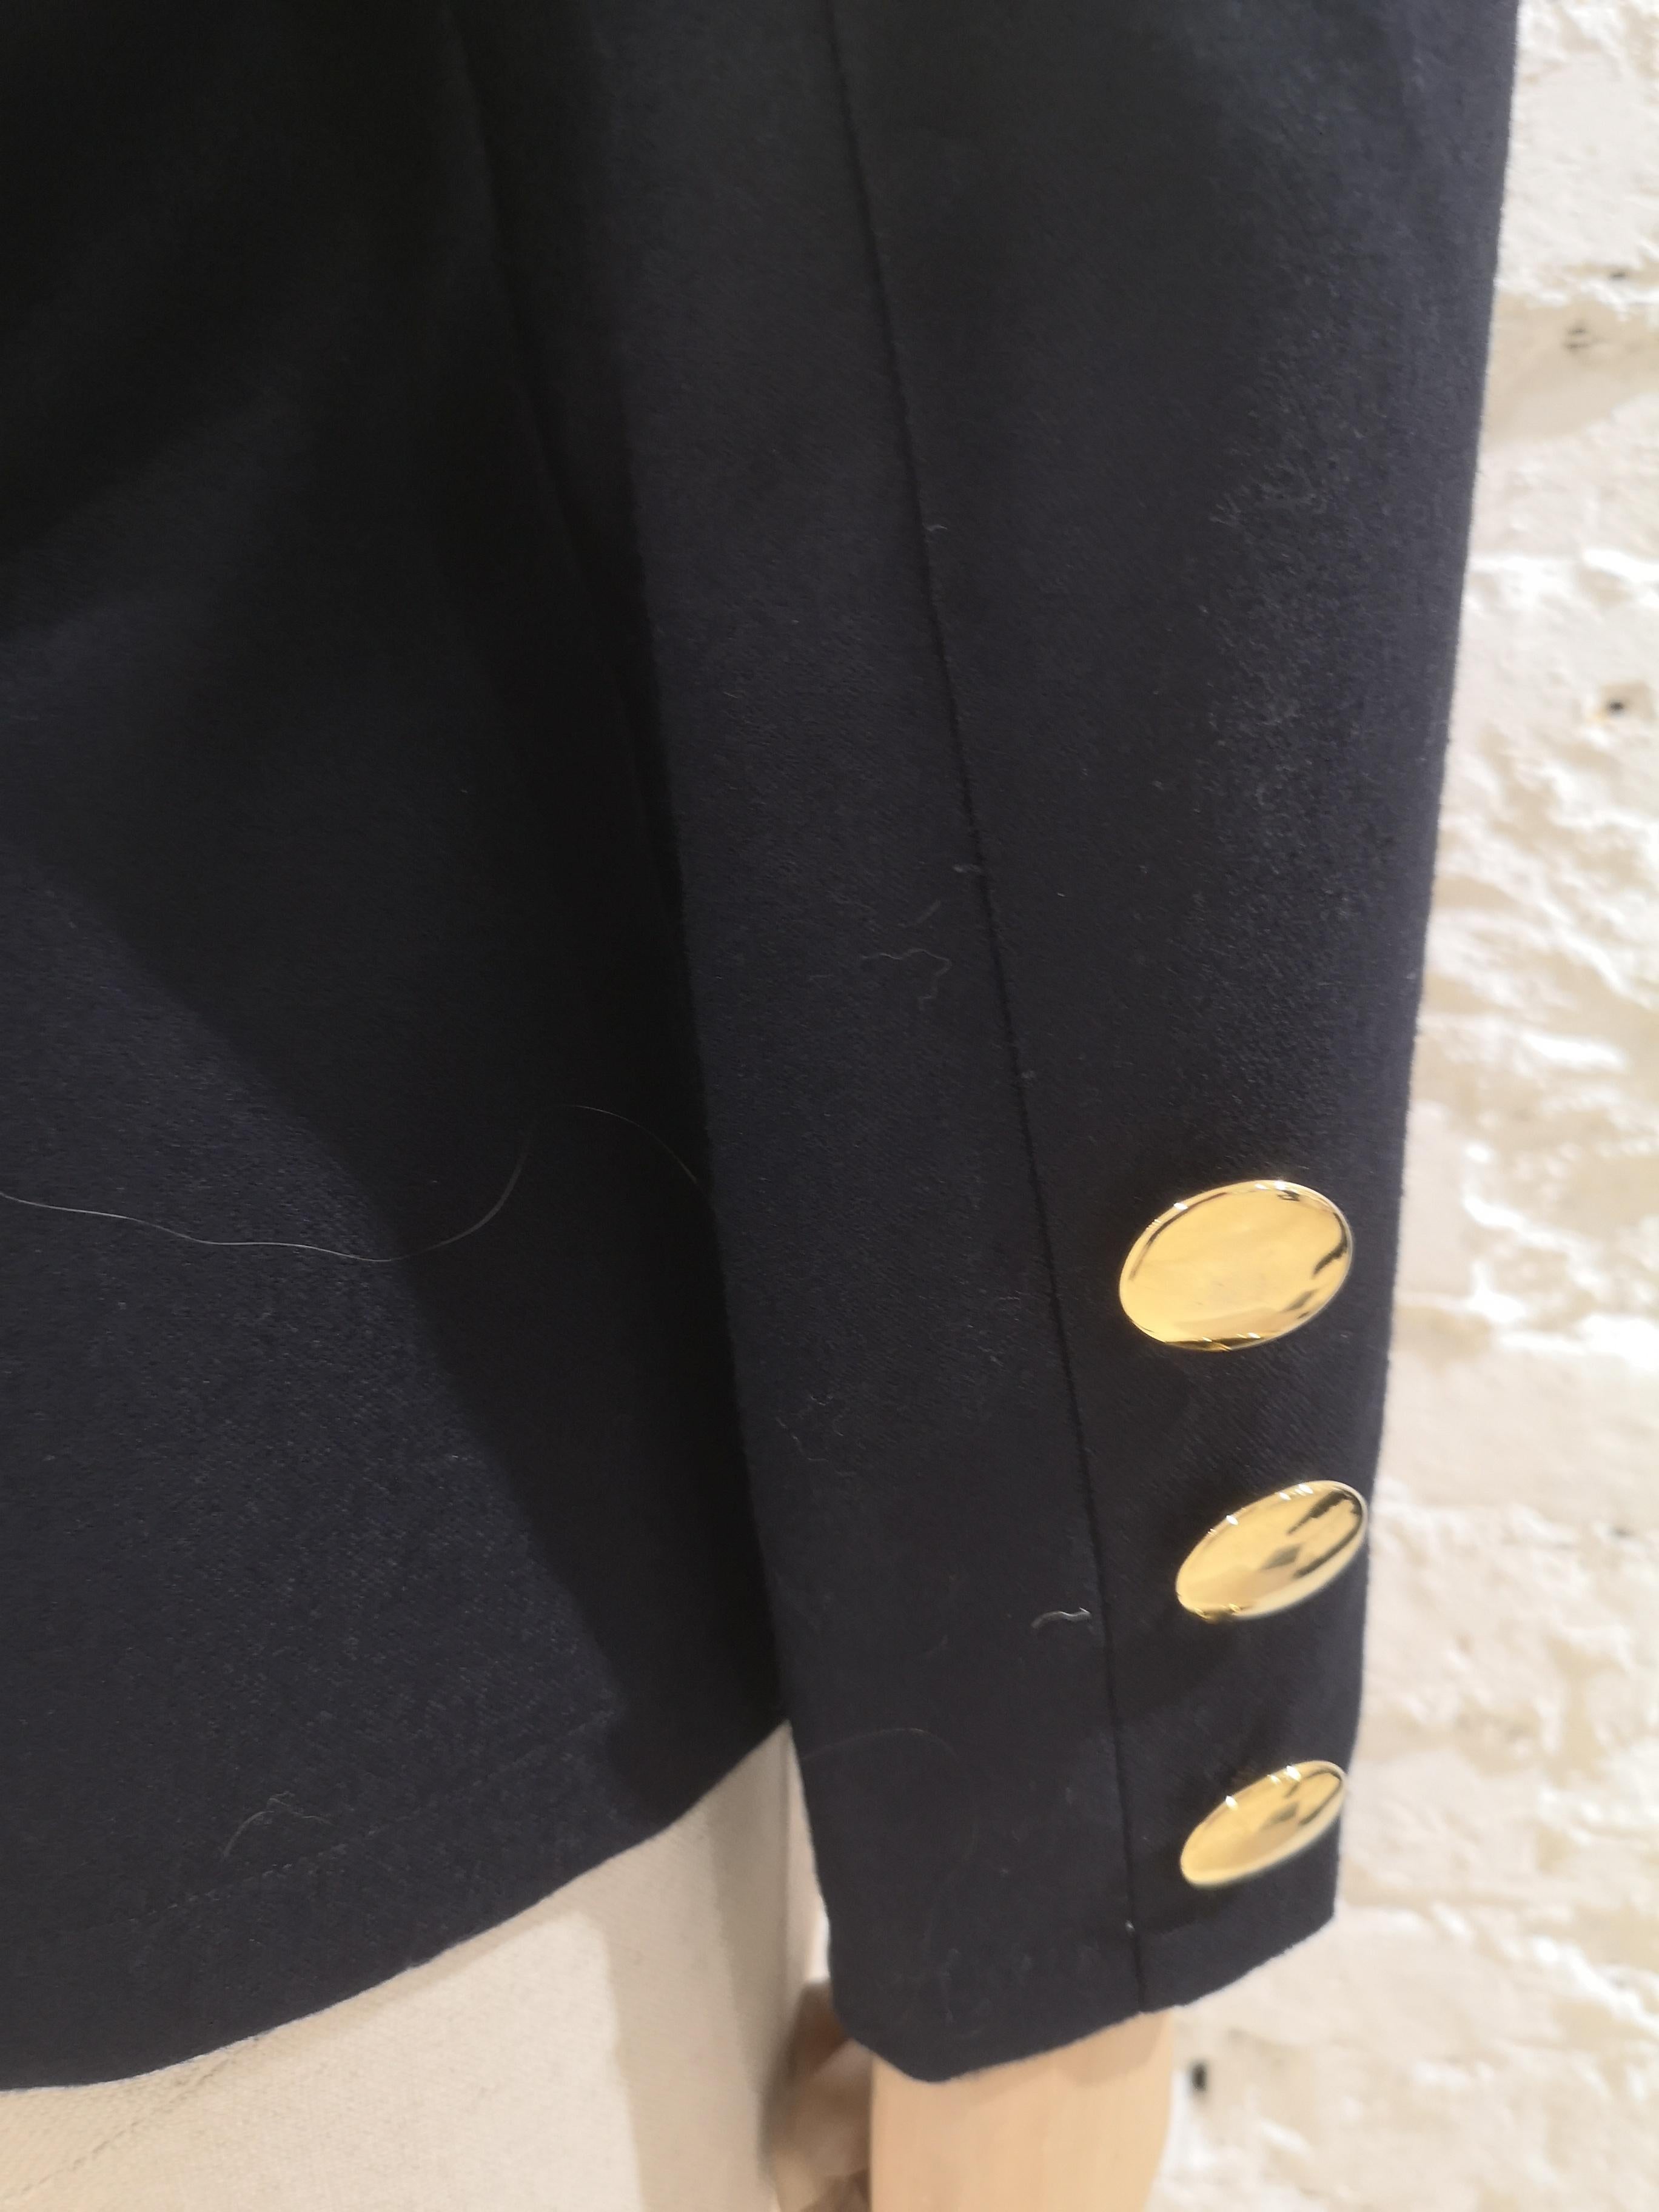 Yves Saint Laurent blue wool gold buttons jacket
Length: 63 cm
Shoulders: 40 cm
Chest width: 42 cm
Sleeve length: 59 cm